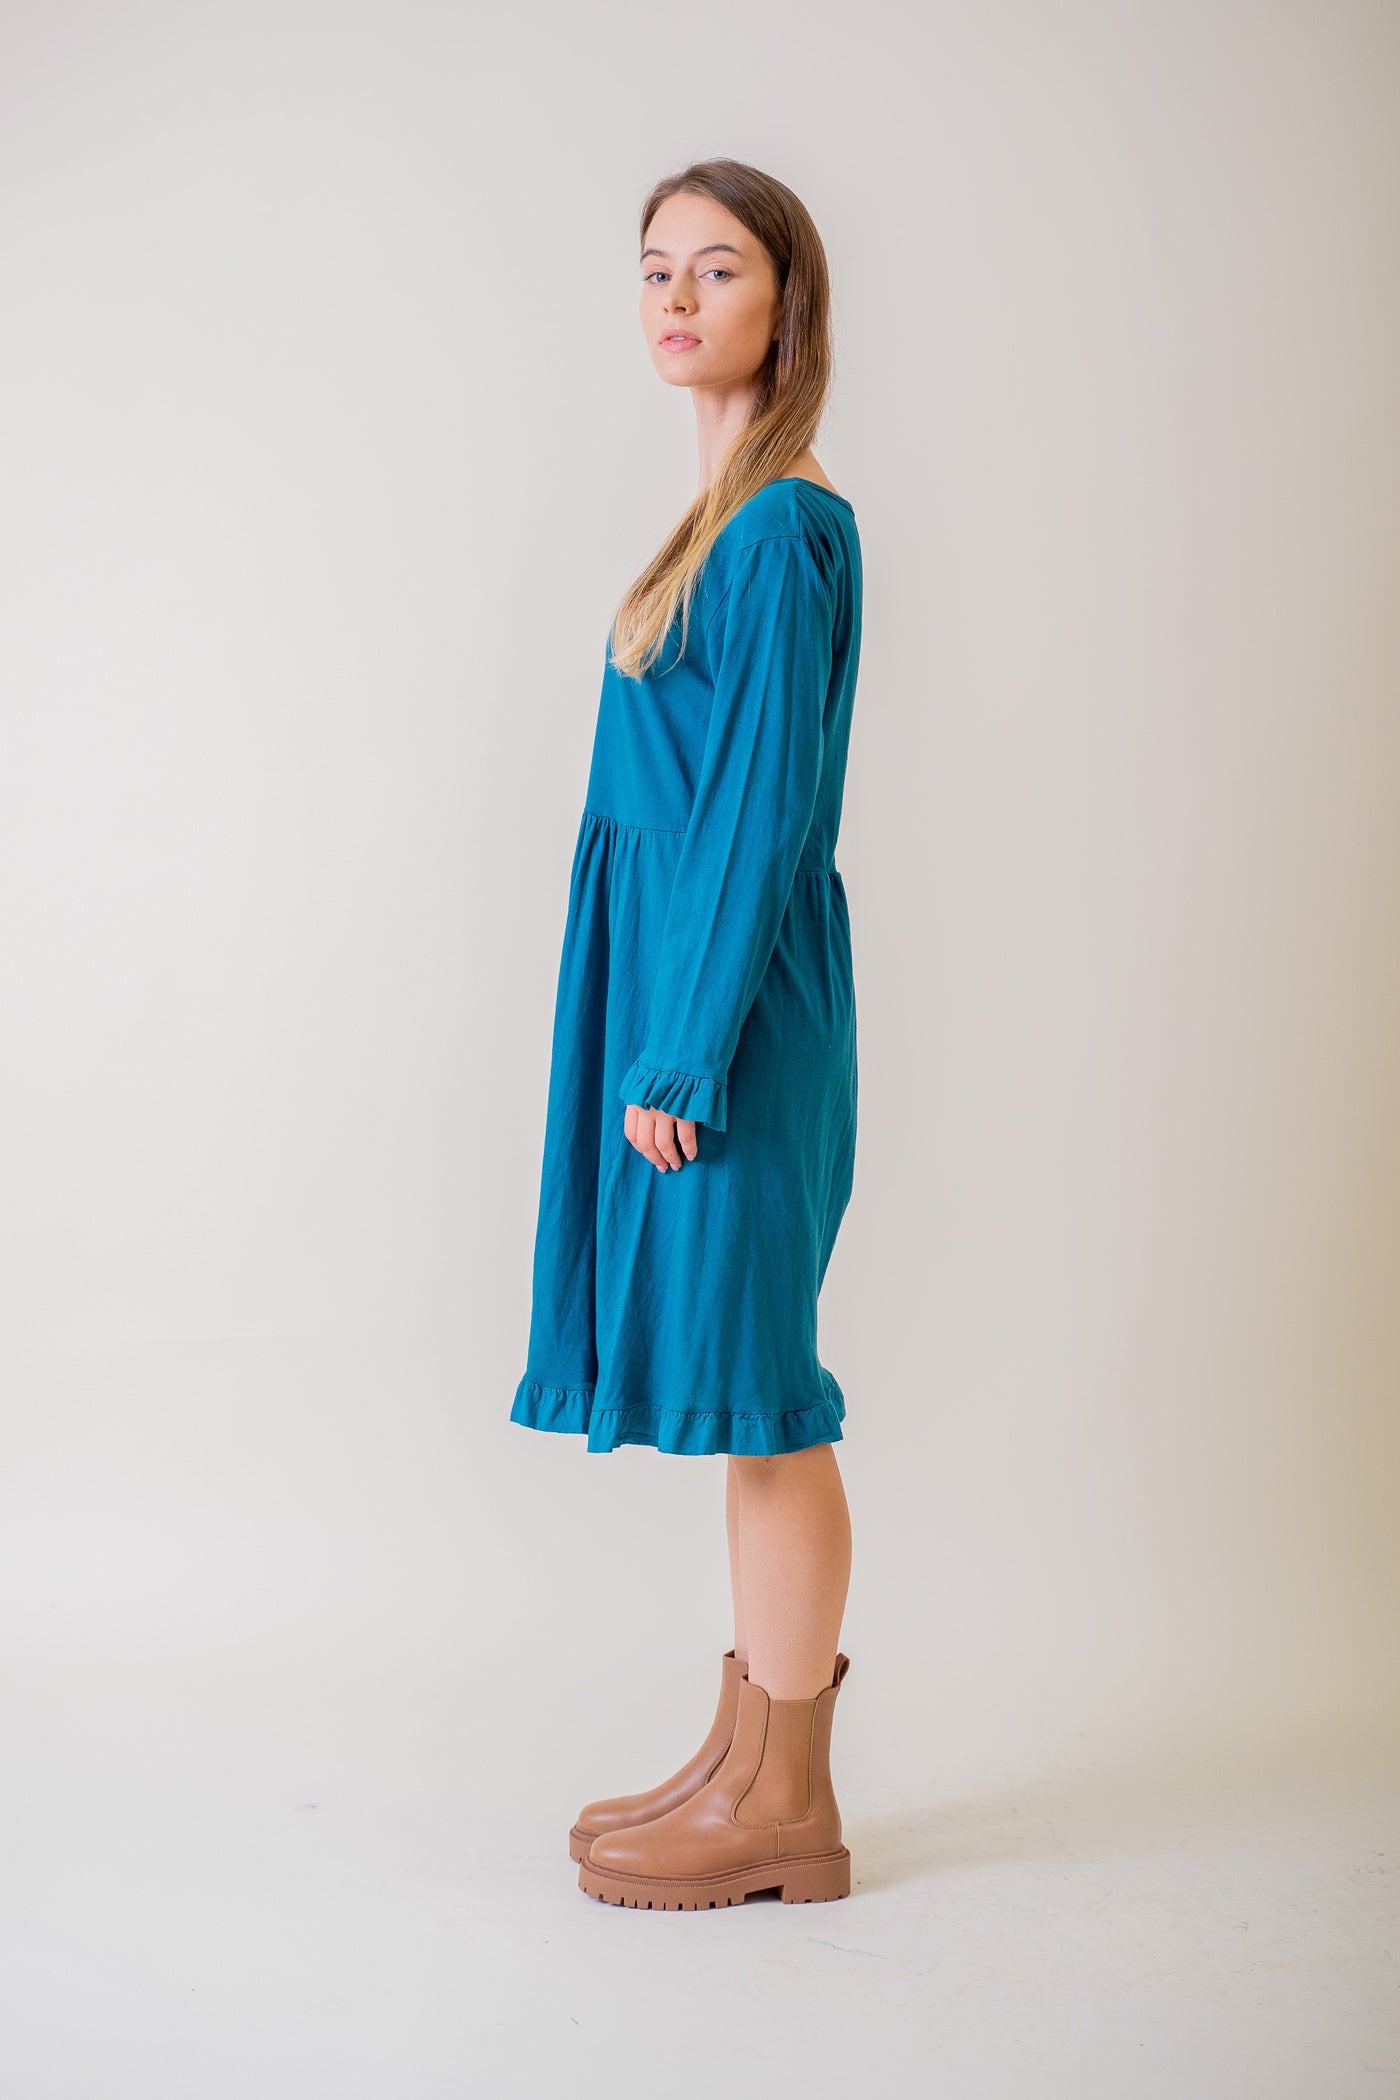 Modré úpletové šaty - UNI - Šaty